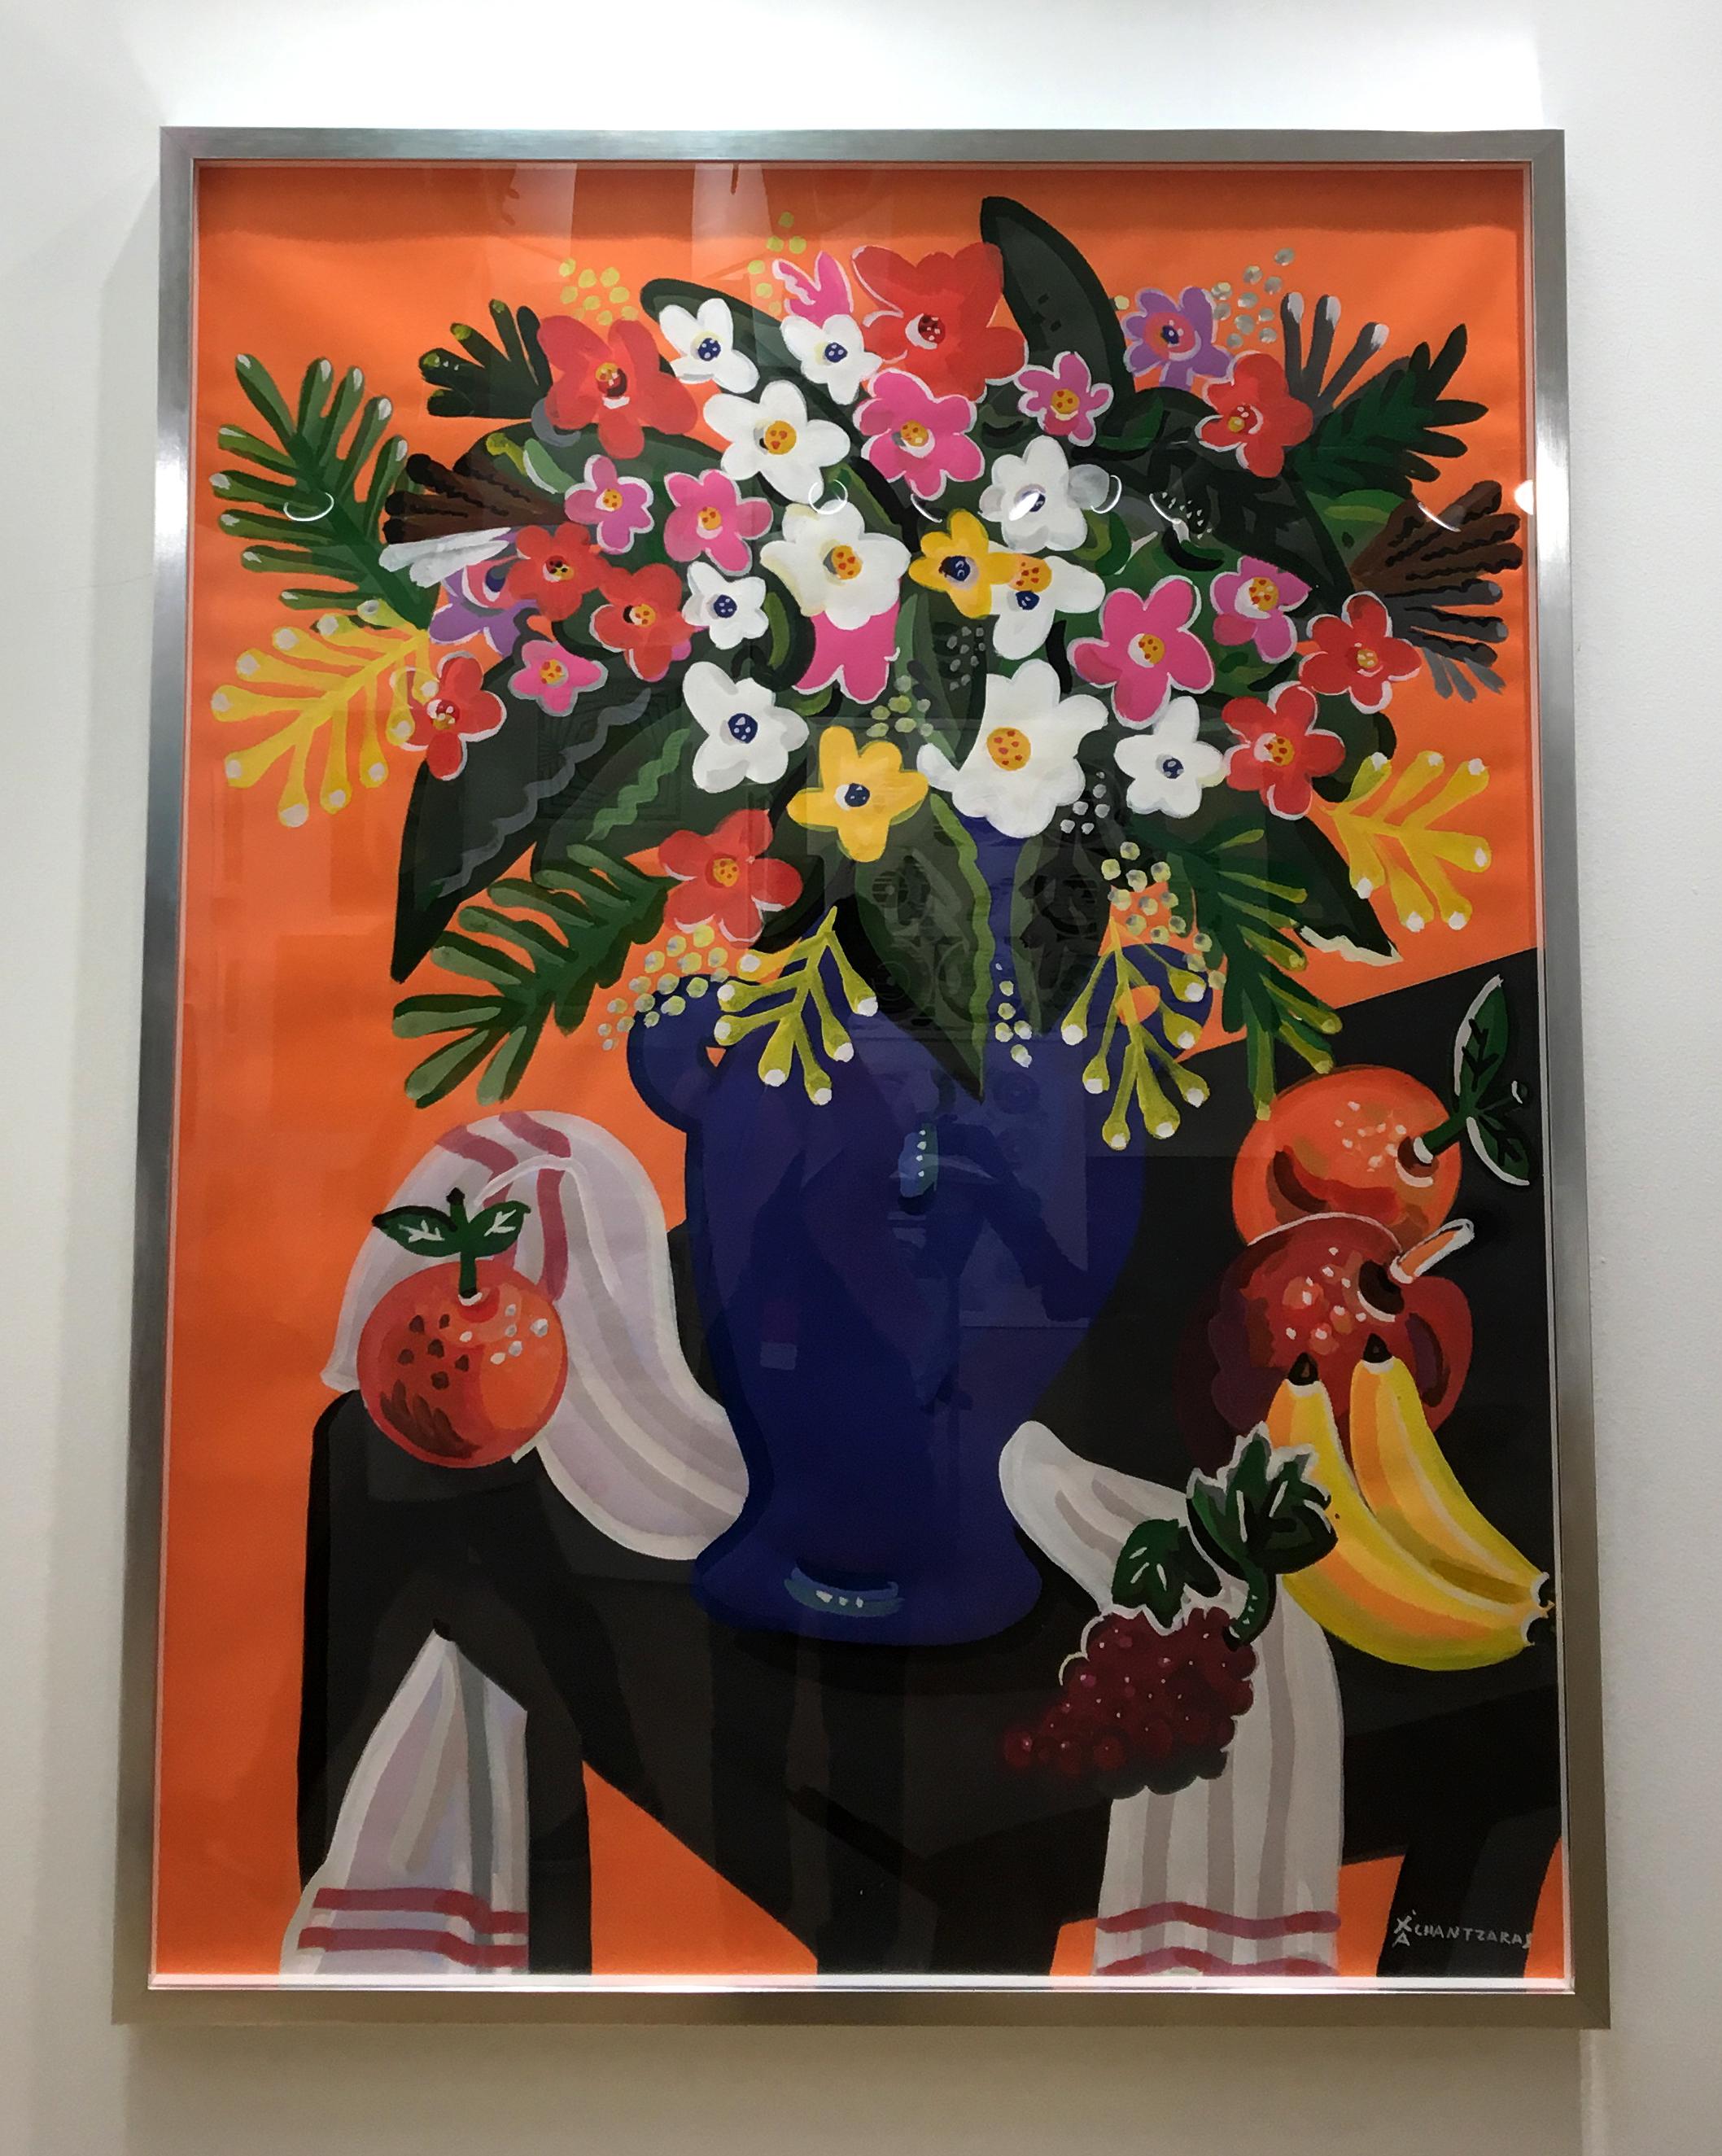 Bouquet, peinture de nature morte colorée Pop art en forme de fleur, fond orange - Marron Figurative Painting par Apostolos Chantzaras